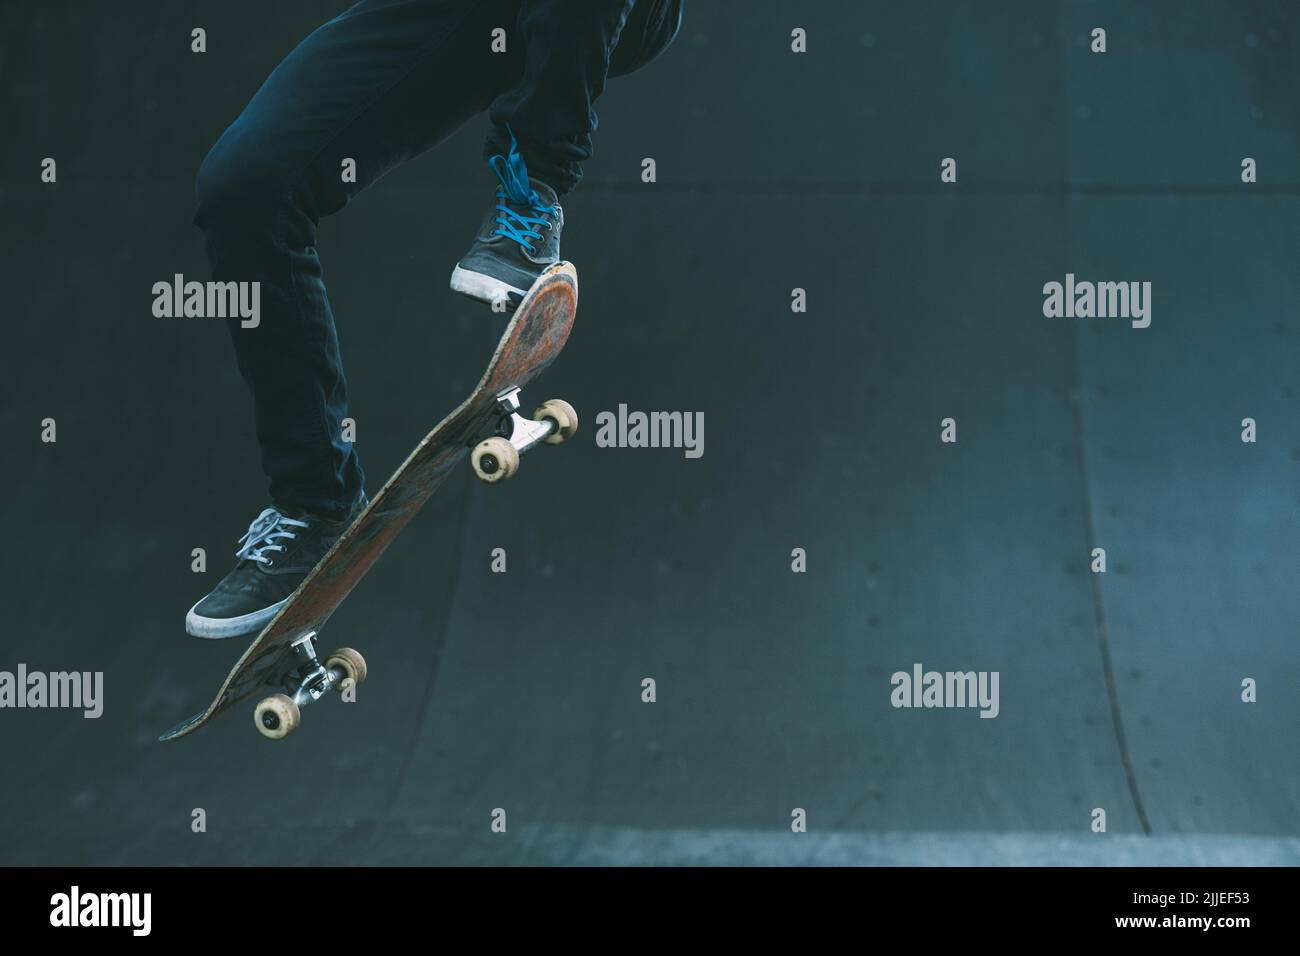 skater urbano trick skate rampa uomo salto Foto Stock